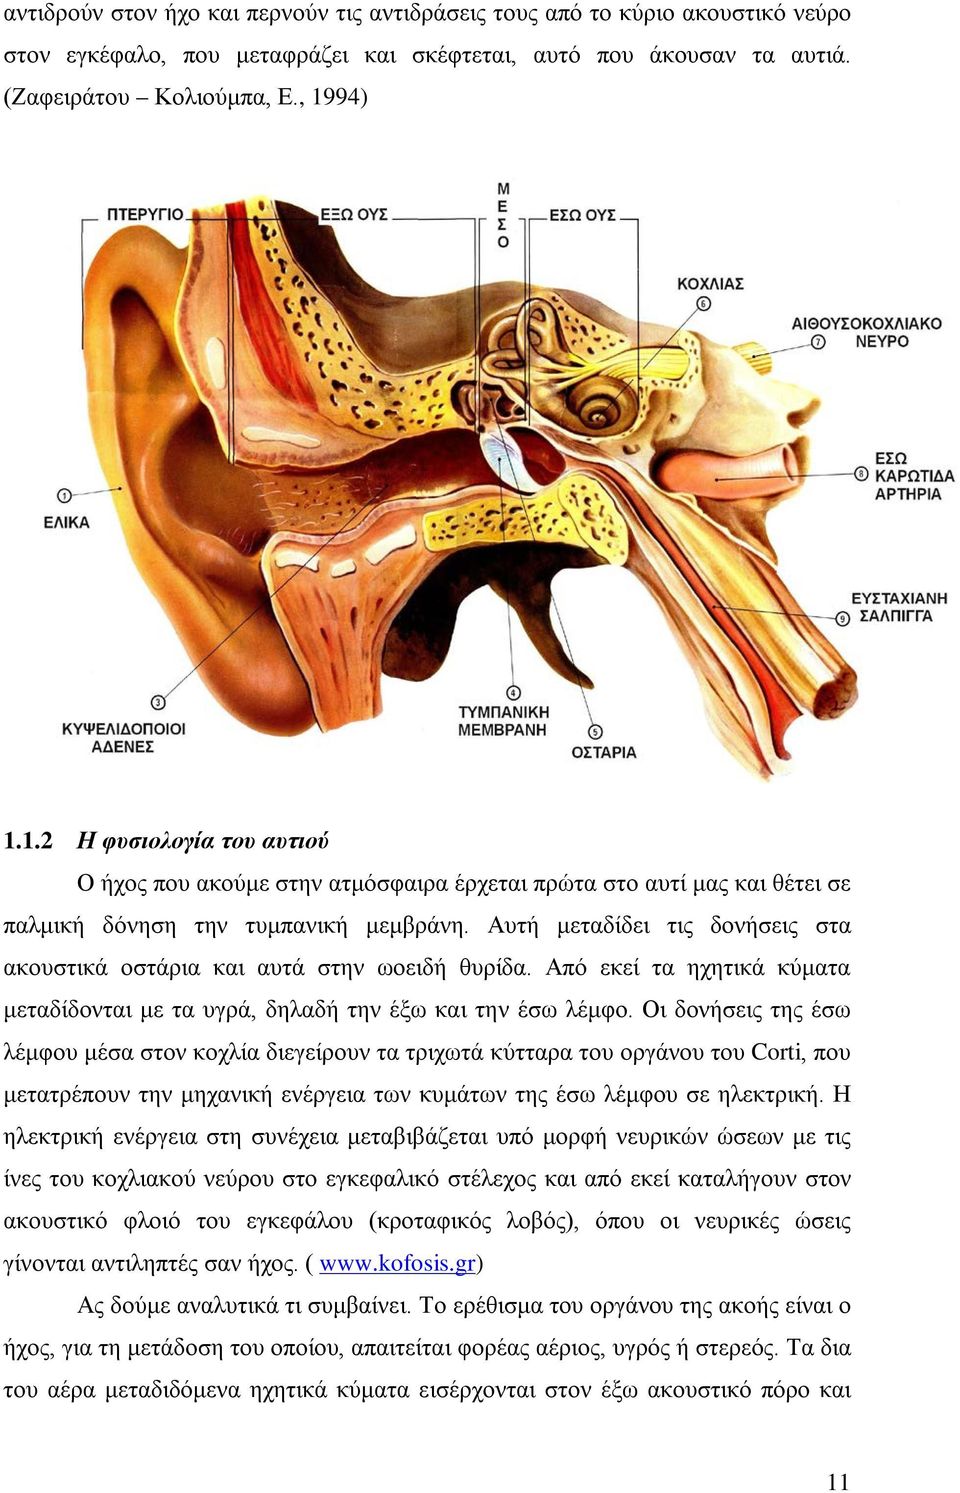 Αυτή μεταδίδει τις δονήσεις στα ακουστικά οστάρια και αυτά στην ωοειδή θυρίδα. Από εκεί τα ηχητικά κύματα μεταδίδονται με τα υγρά, δηλαδή την έξω και την έσω λέμφο.